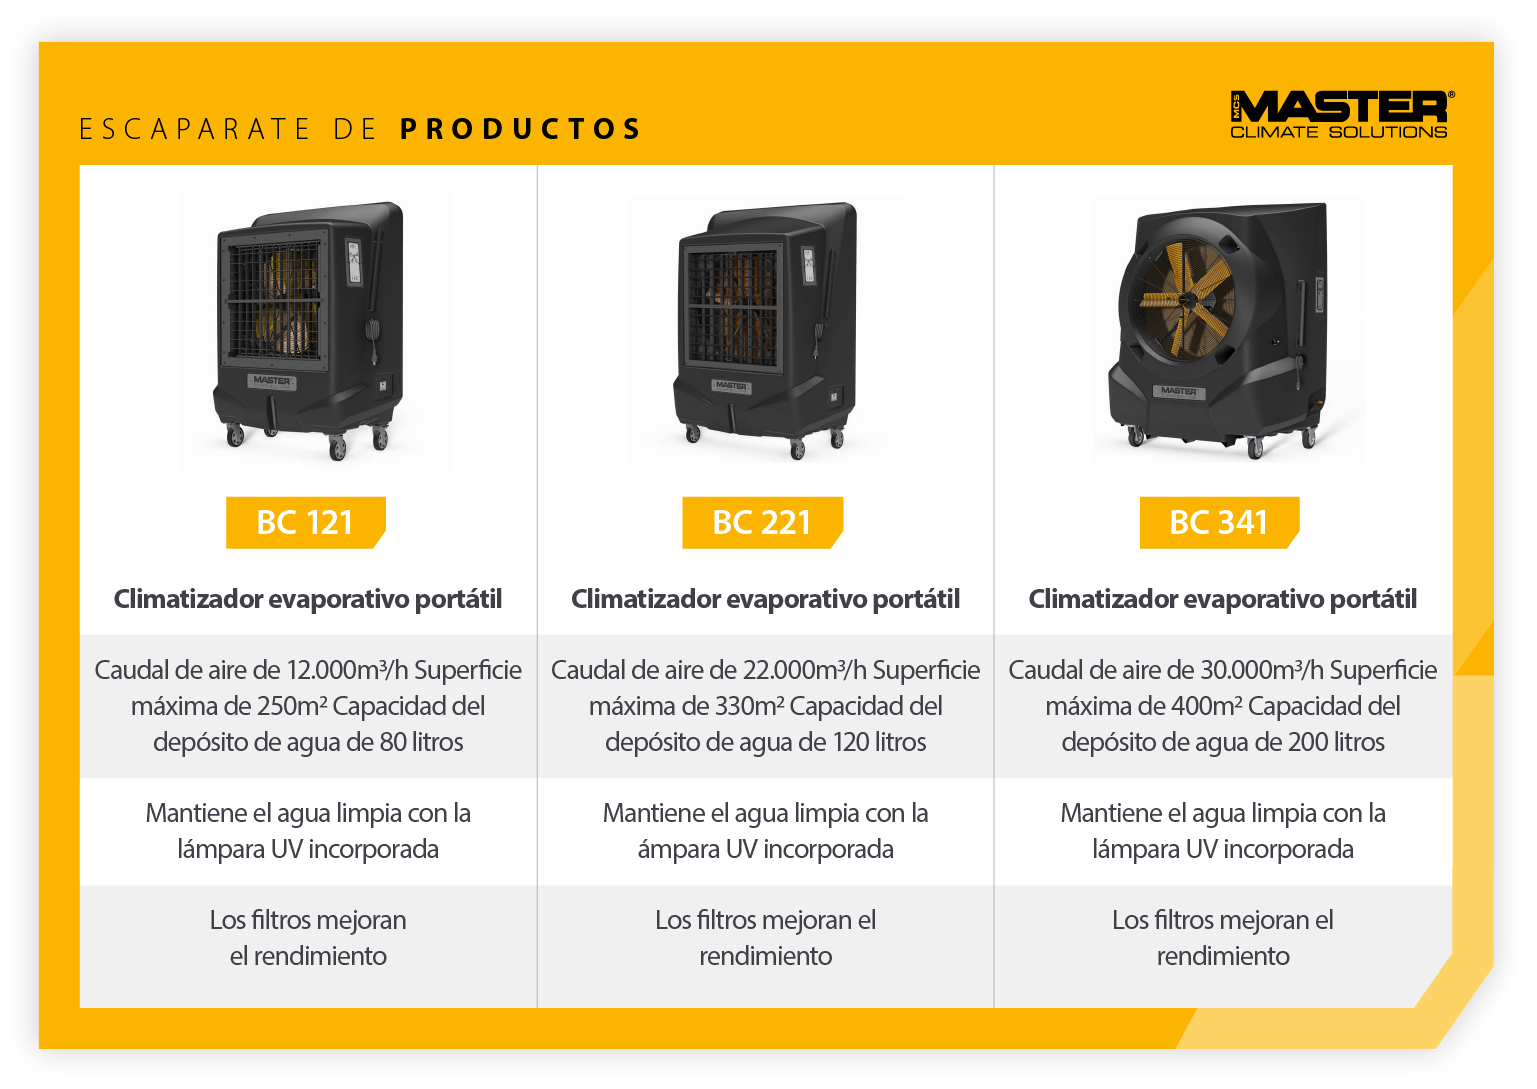 Muestra de productos comparando las características de las unidades portátiles de refrigeración por evaporación Master